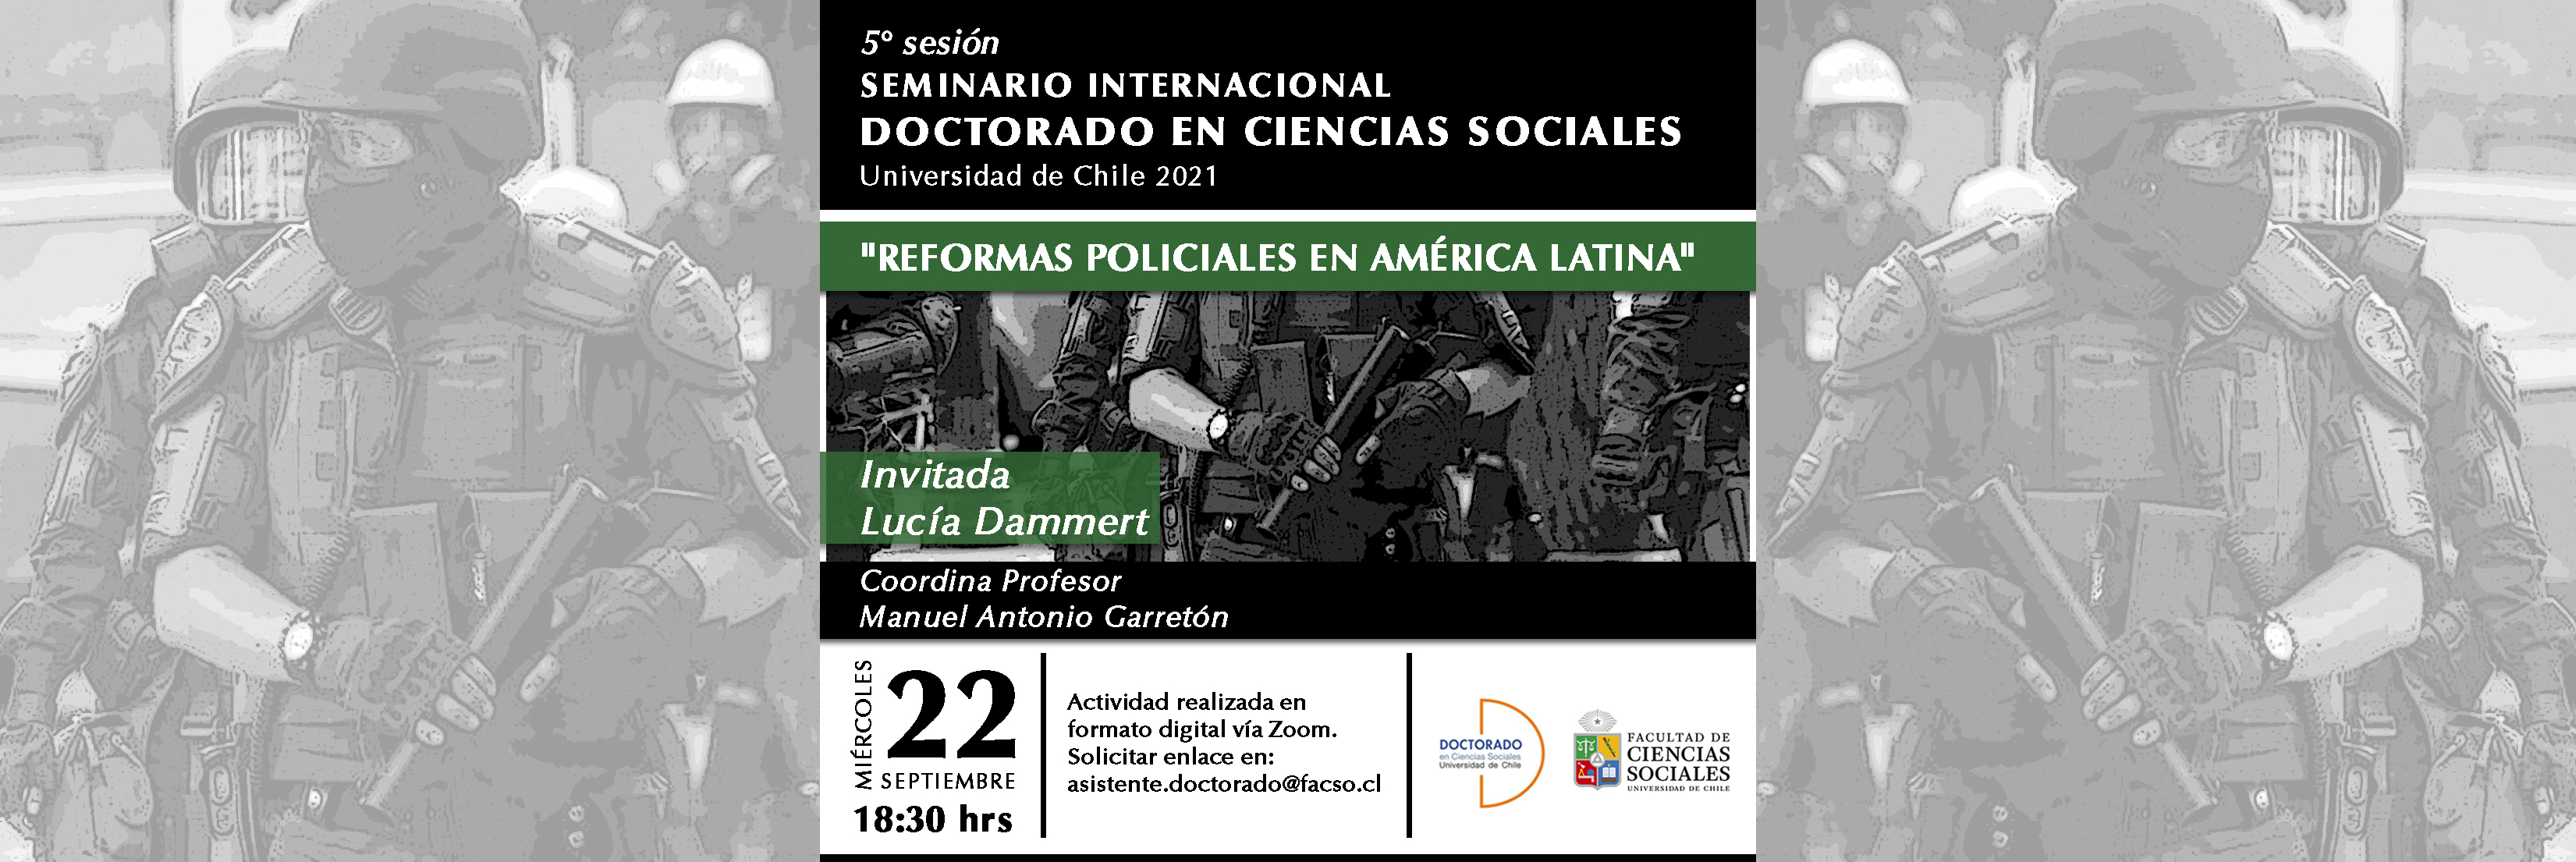 Quinta sesión del seminario Internacional del Doctorado en Ciencias Sociales 2021